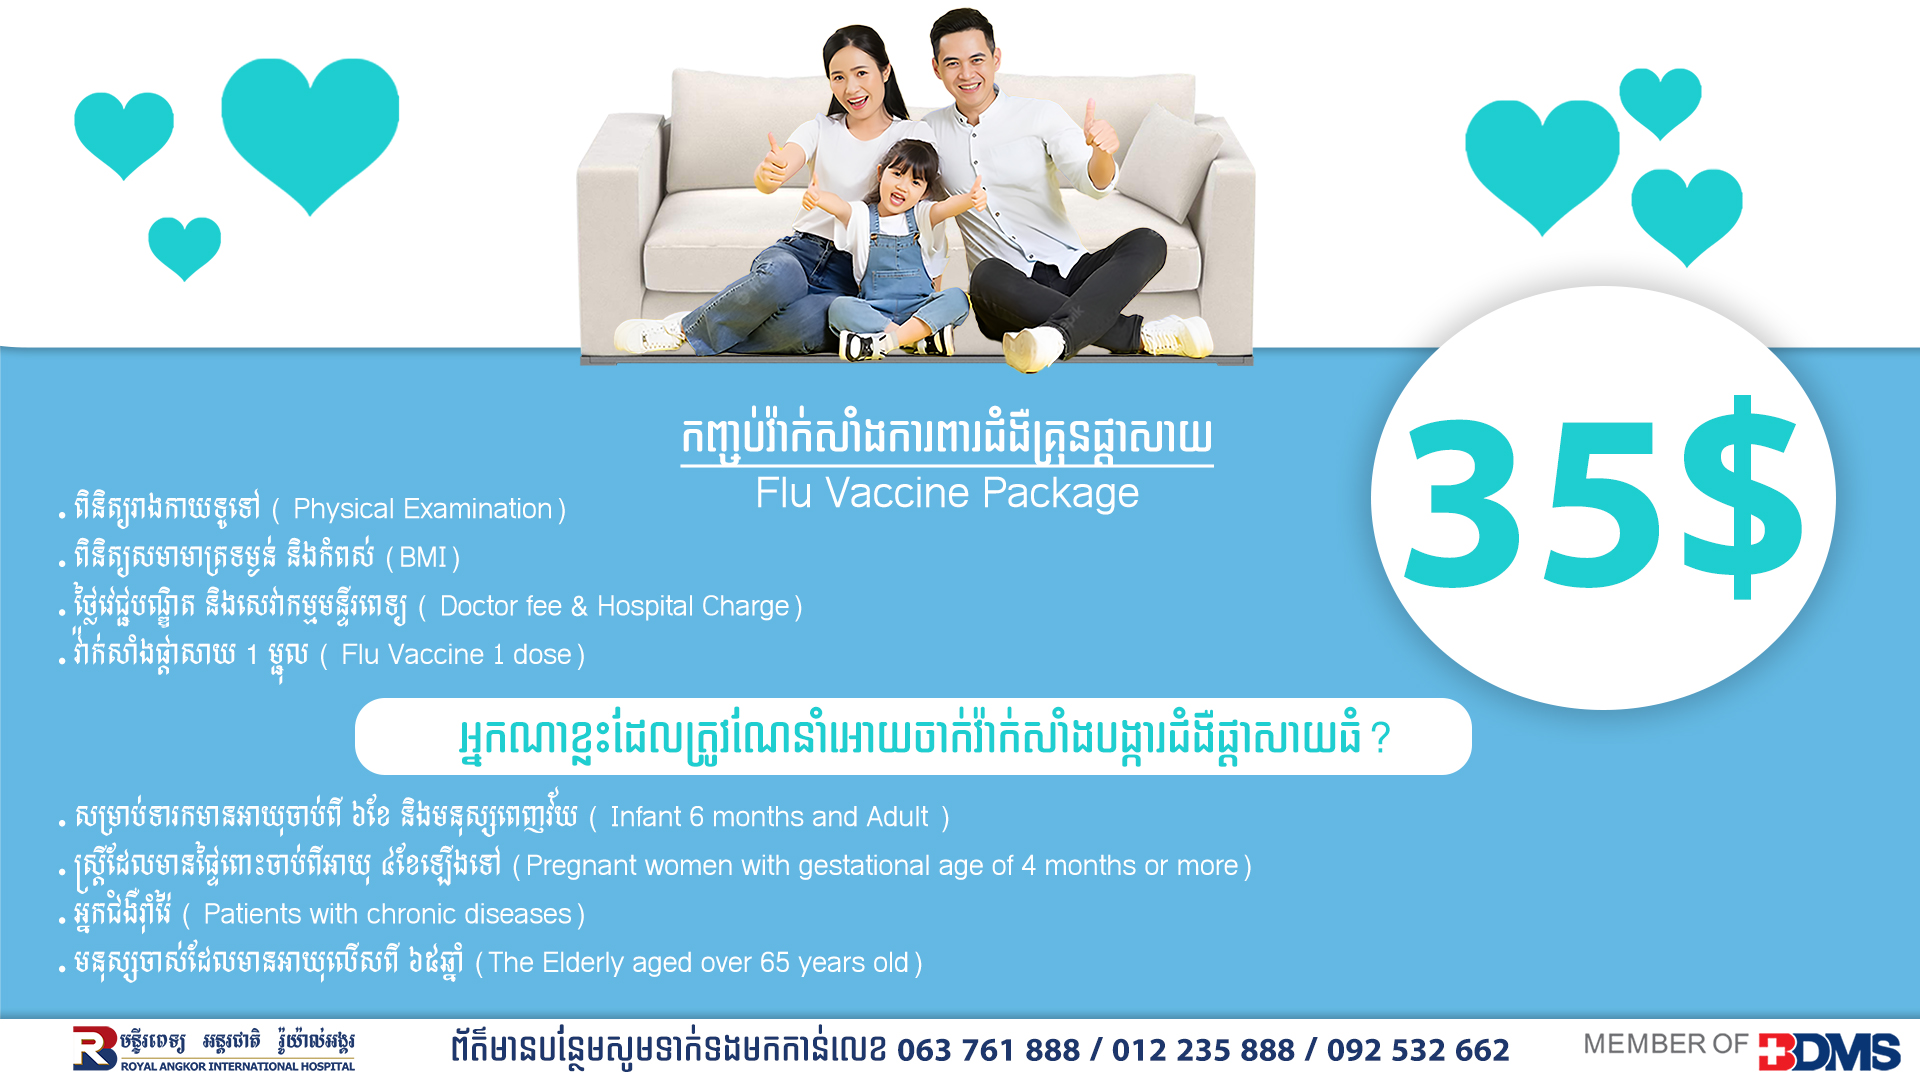 Flu Vaccine Package